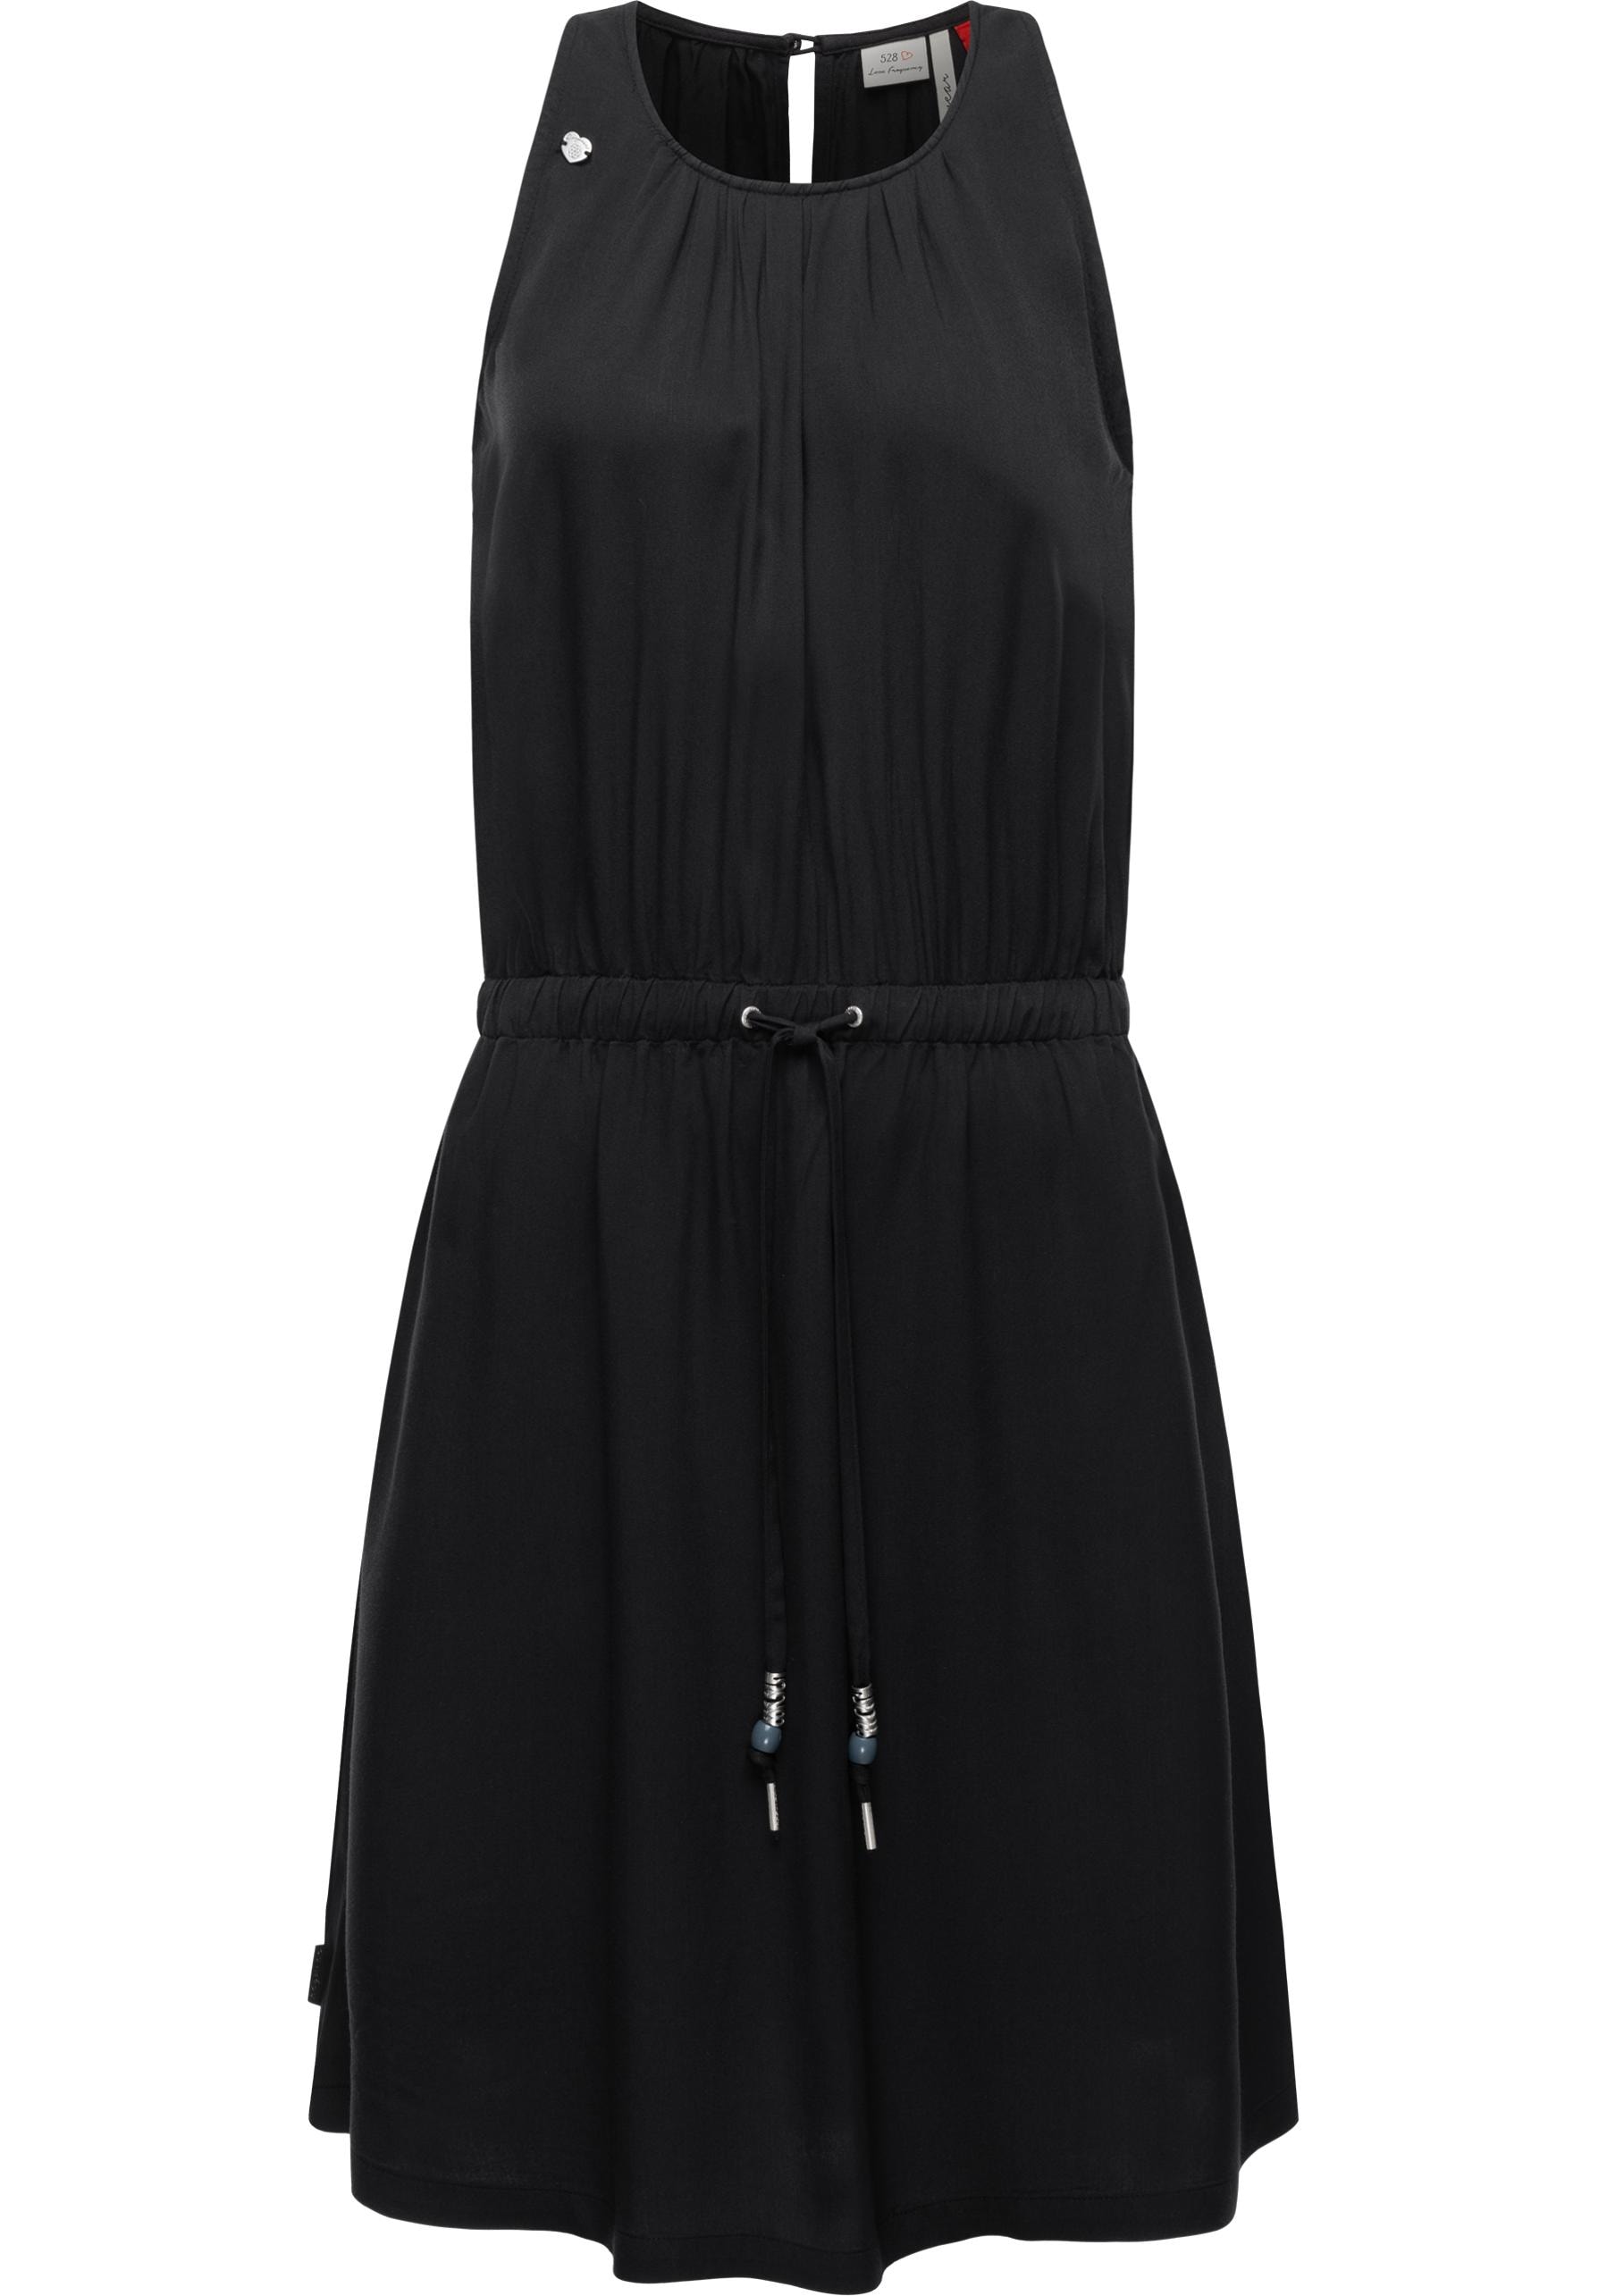 Blusenkleid »Sanai«, stylisches Sommerkleid mit verspielten Details